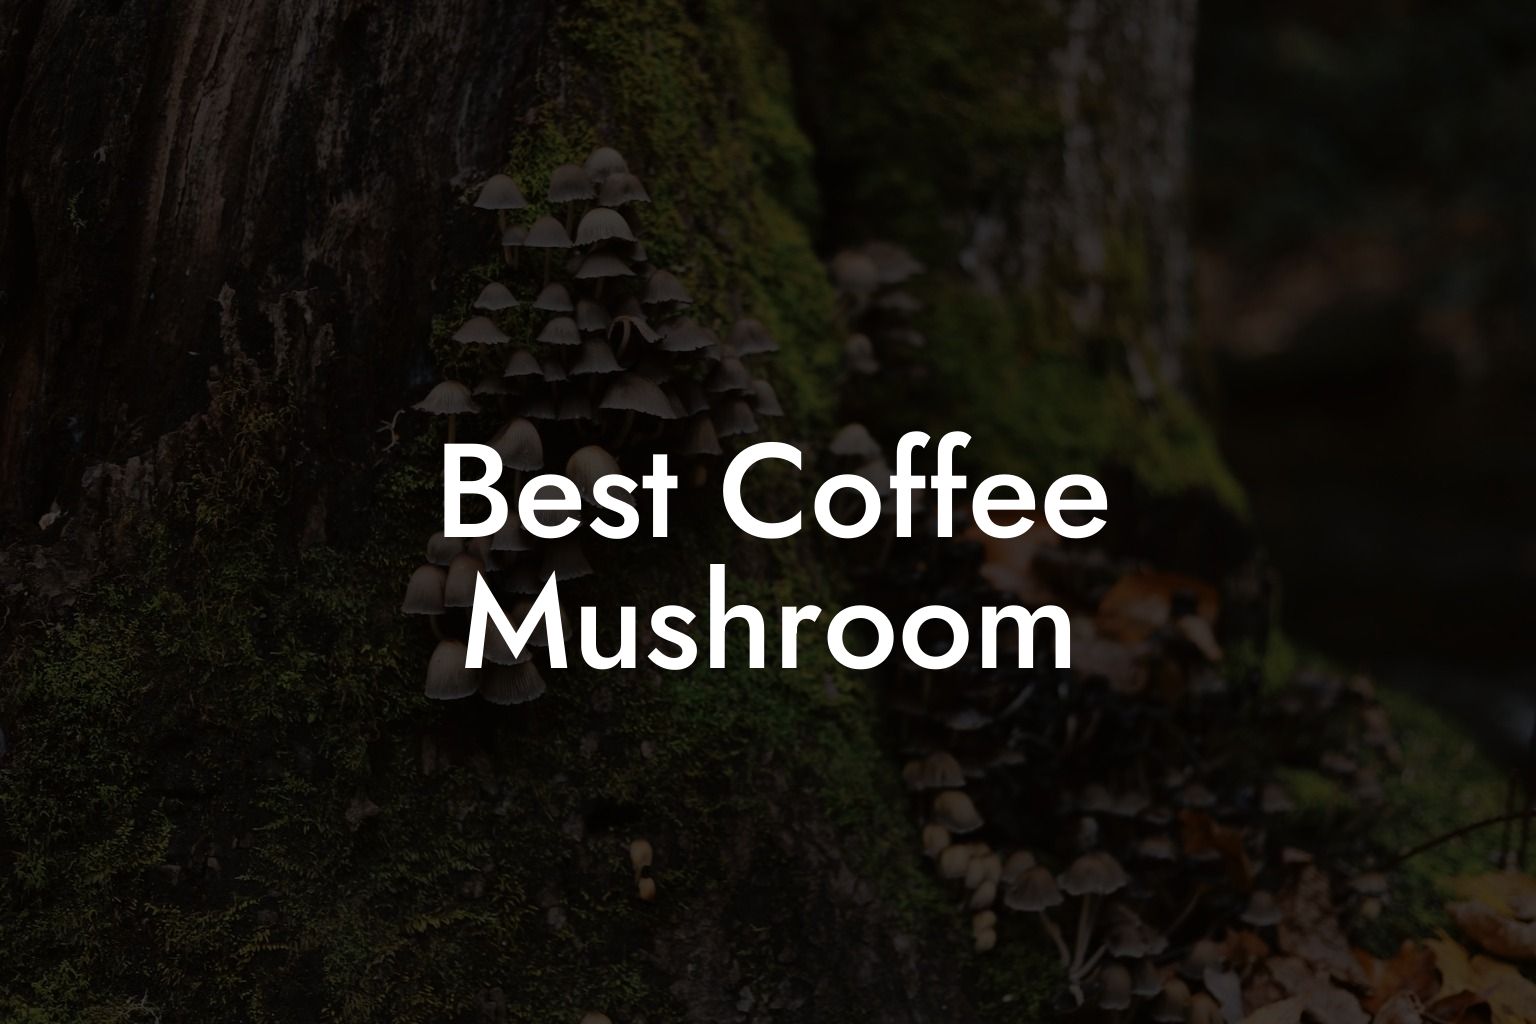 Best Coffee Mushroom